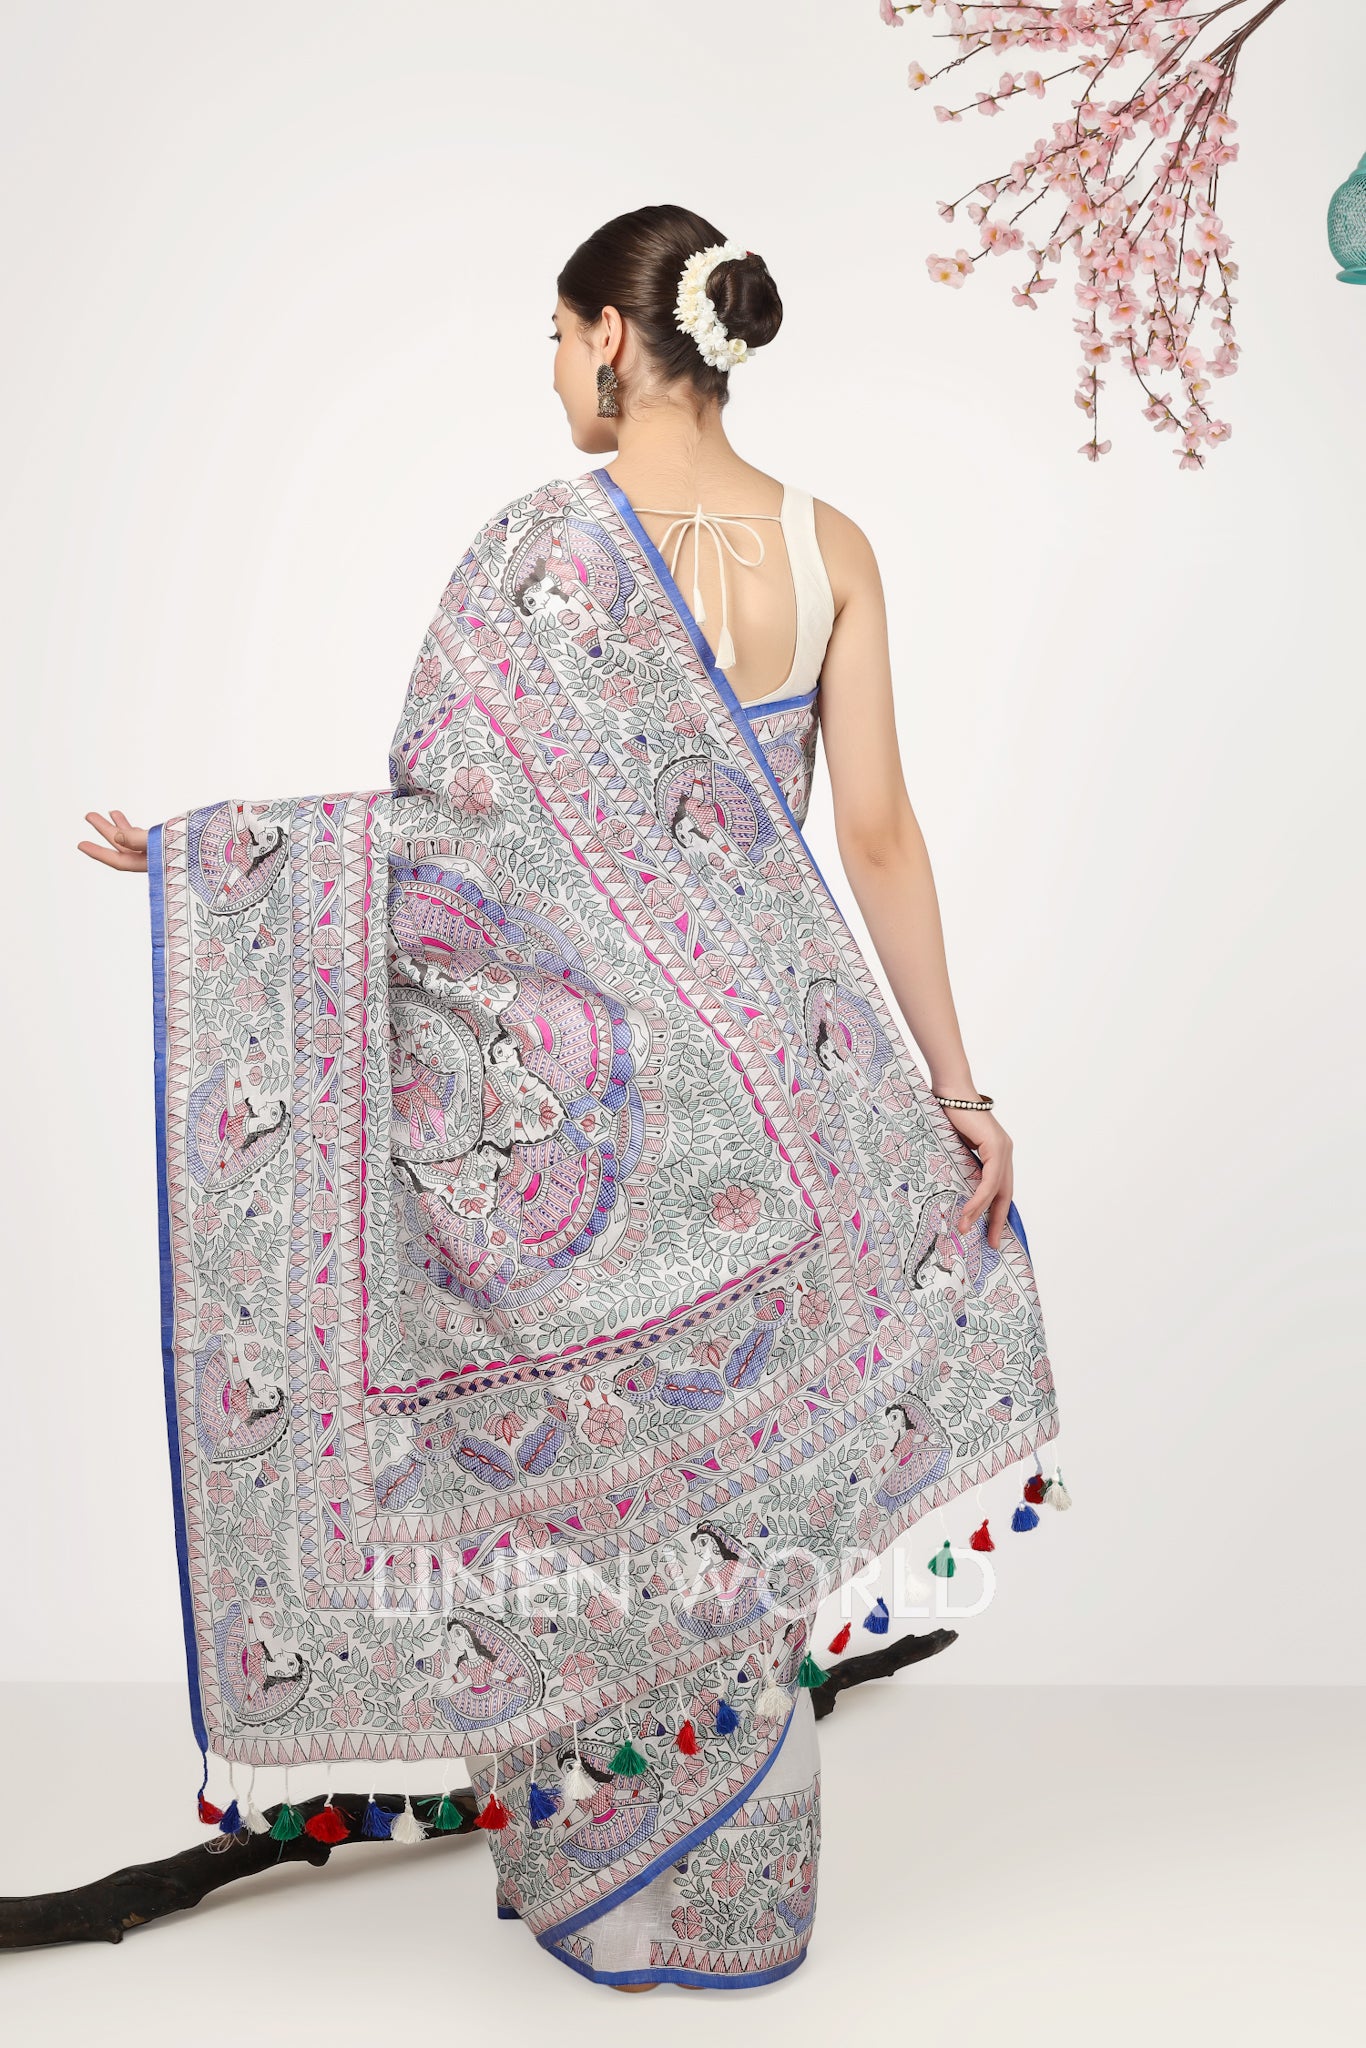 eshita - madhubani painted pure linen sari - linenworldonline.in